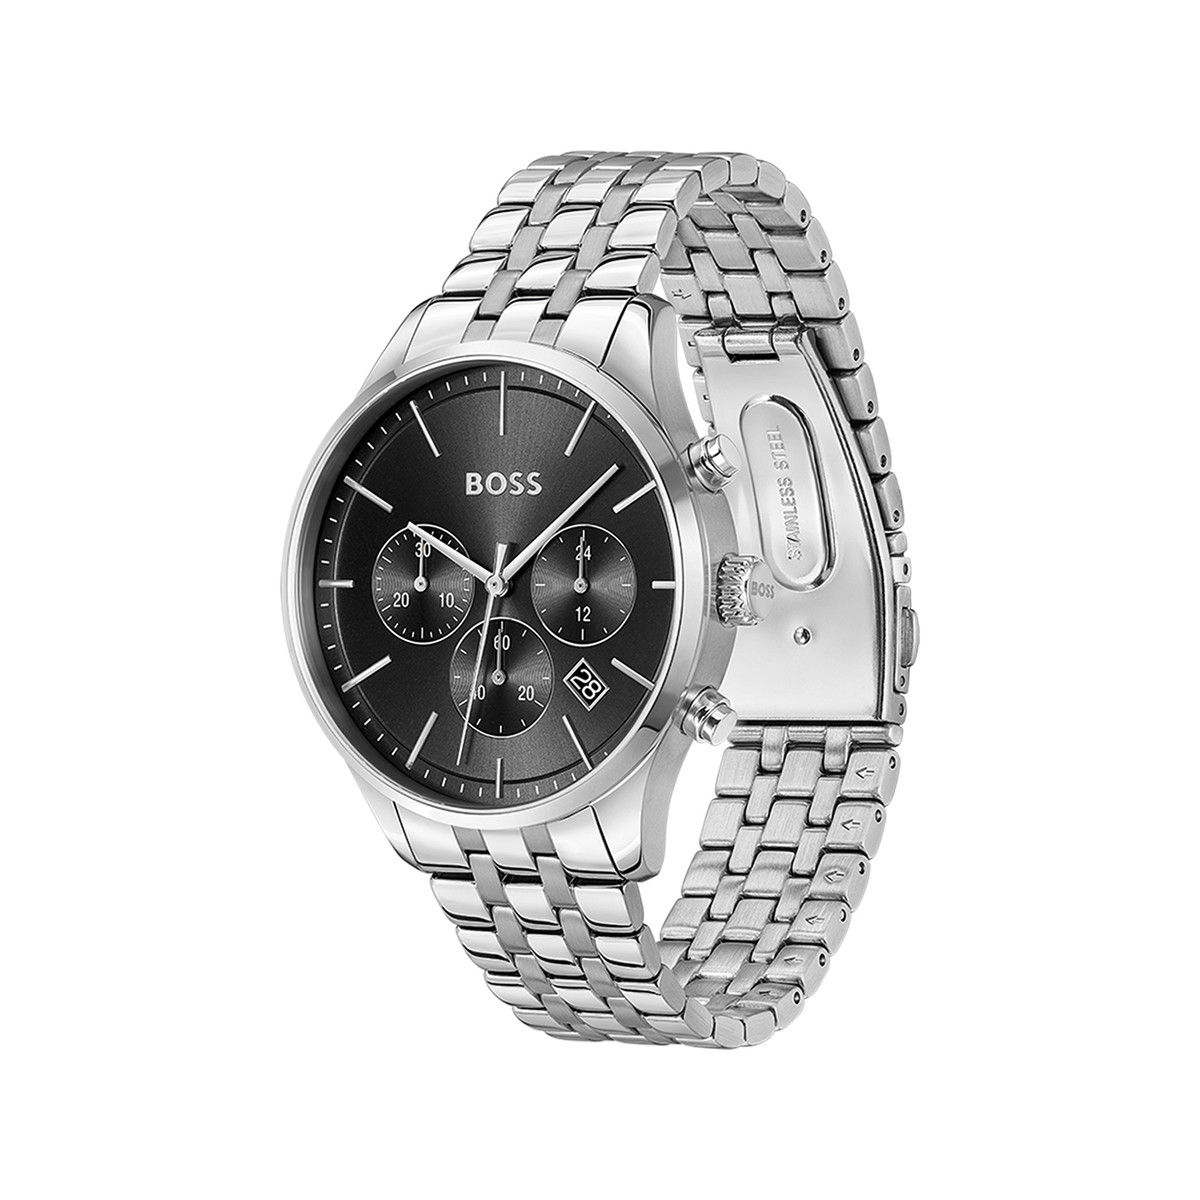 Montre BOSS business homme chronographe bracelet acier inoxydable argent - vue 2